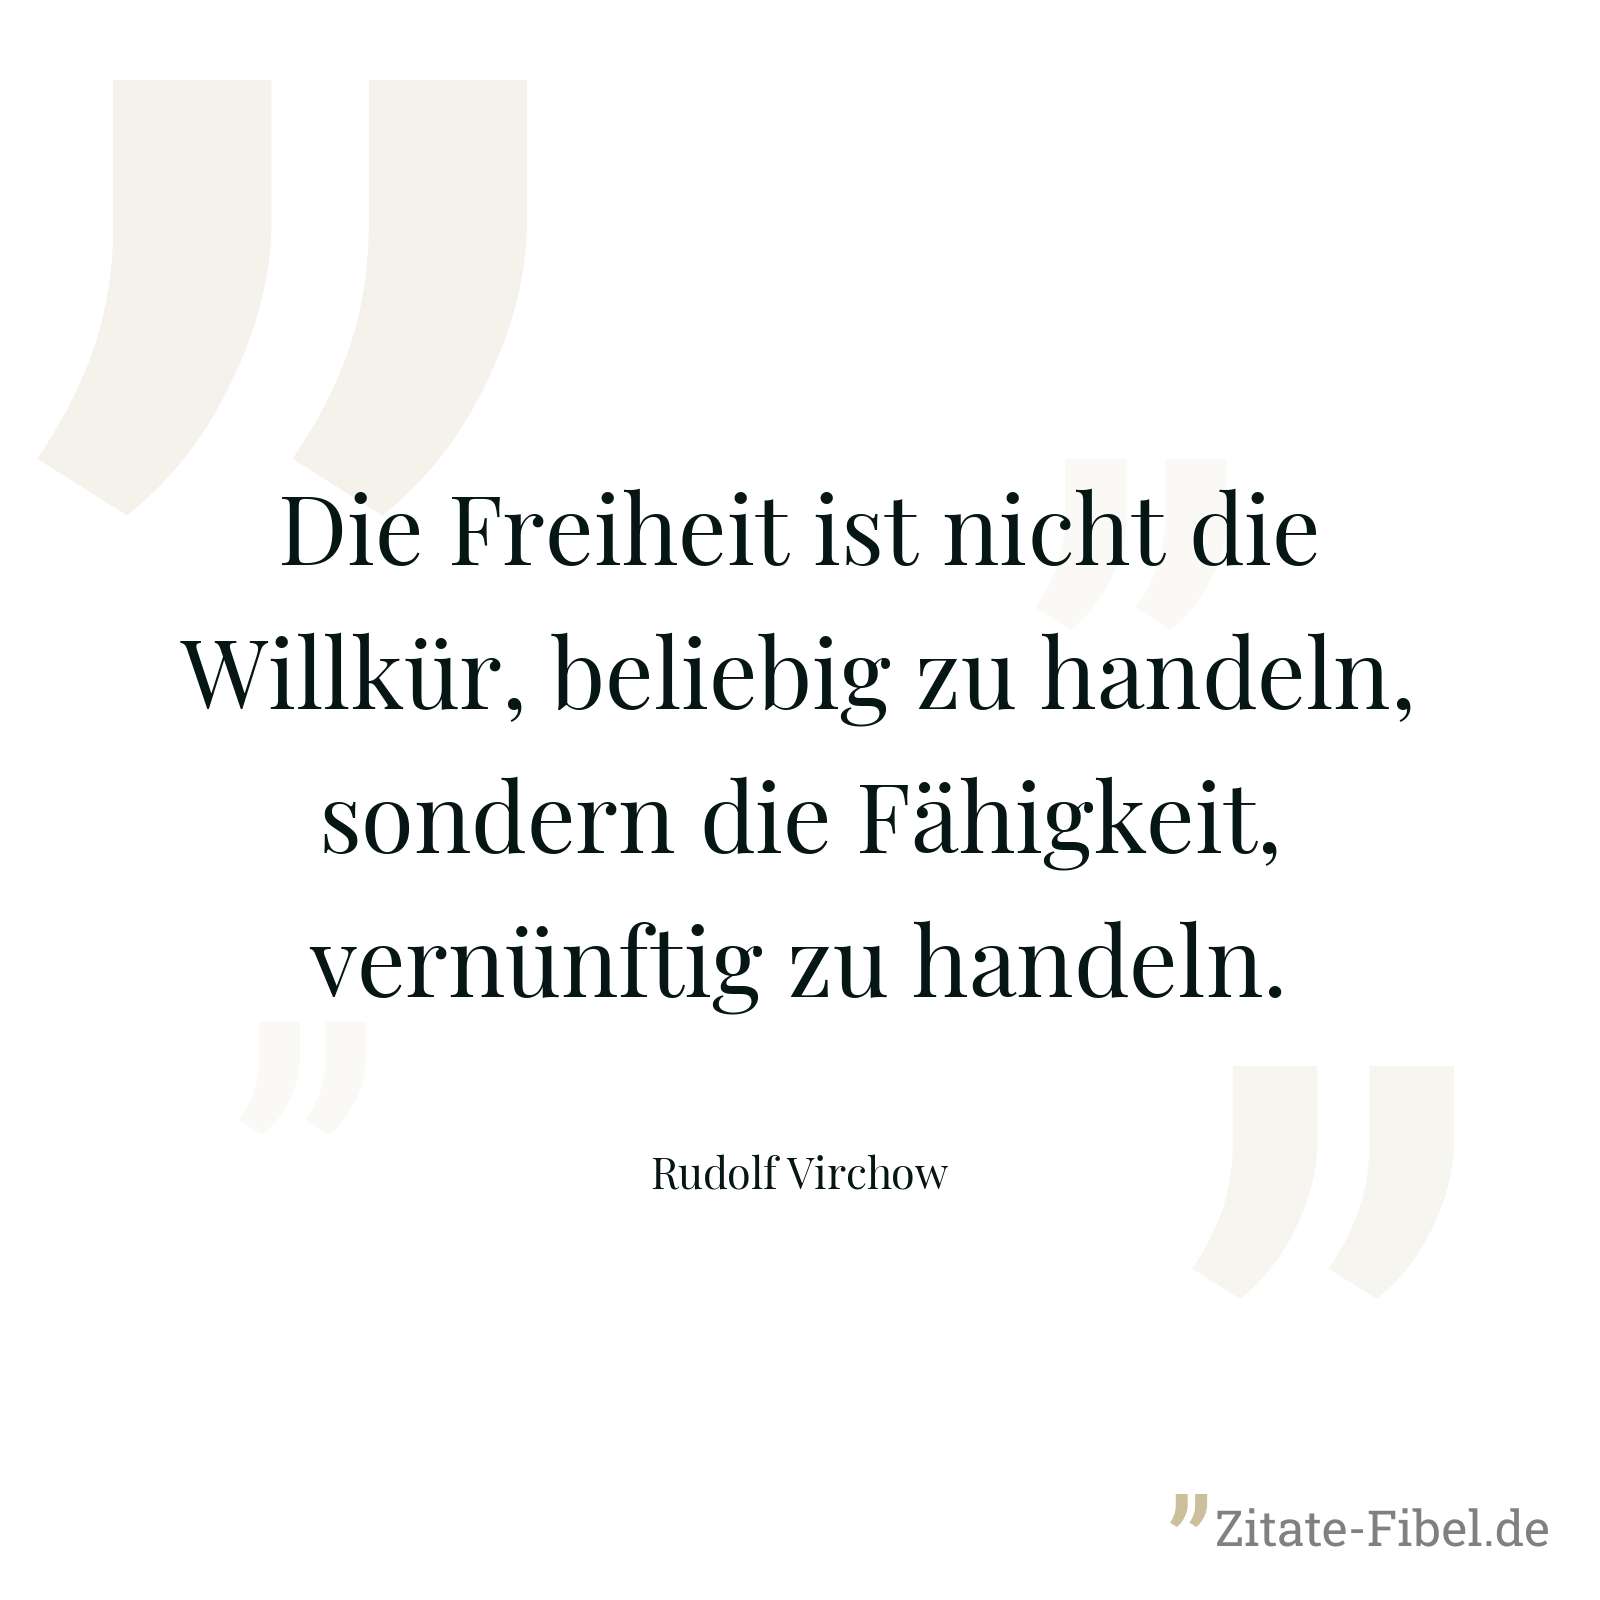 Die Freiheit ist nicht die Willkür, beliebig zu handeln, sondern die Fähigkeit, vernünftig zu handeln. - Rudolf Virchow